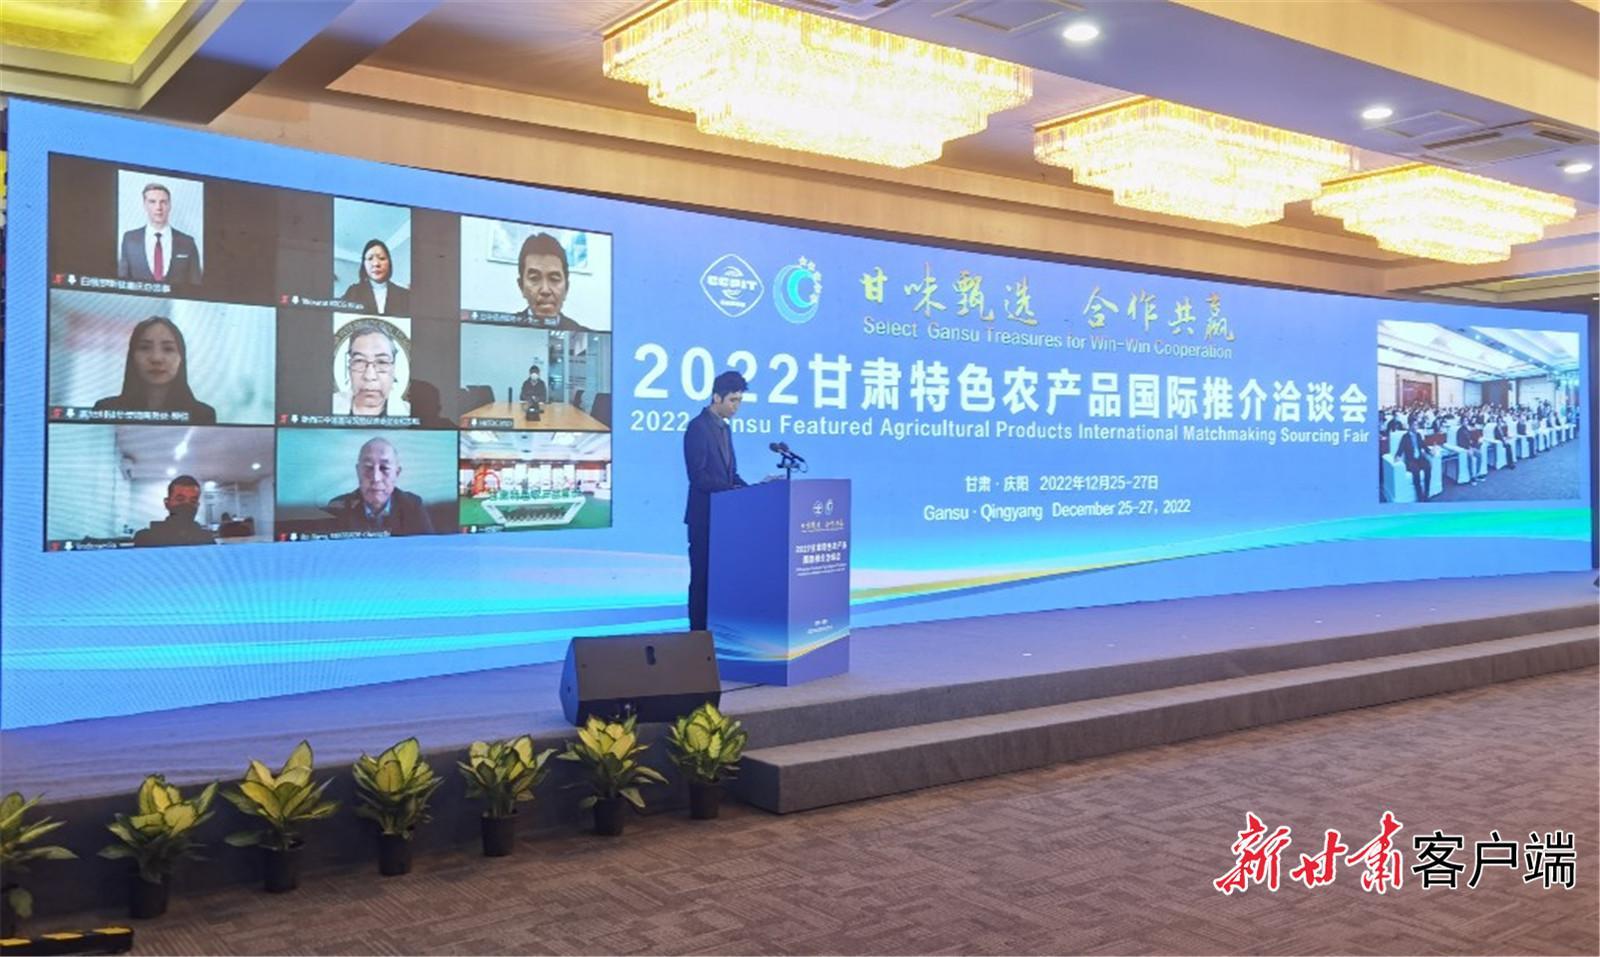 2022甘肃特色农产品国际推介洽谈会在庆阳举办 现场签约金额7320万元